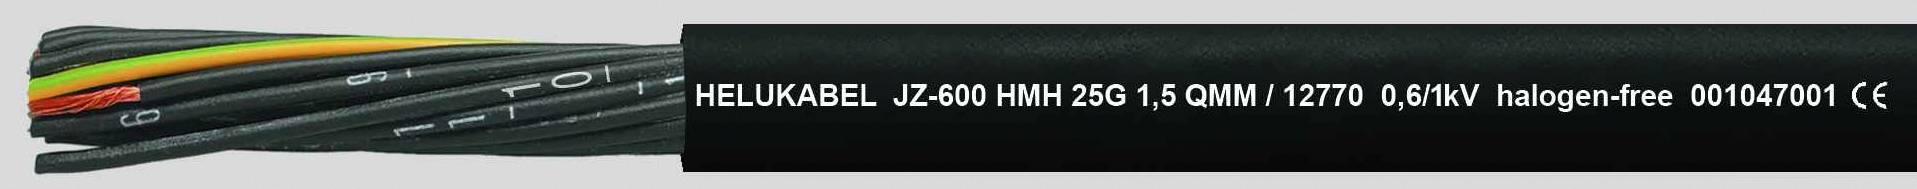 HELUKABEL JZ-600 HMH Steuerleitung 5 G 0.75 mm² Schwarz 12740-1000 1000 m